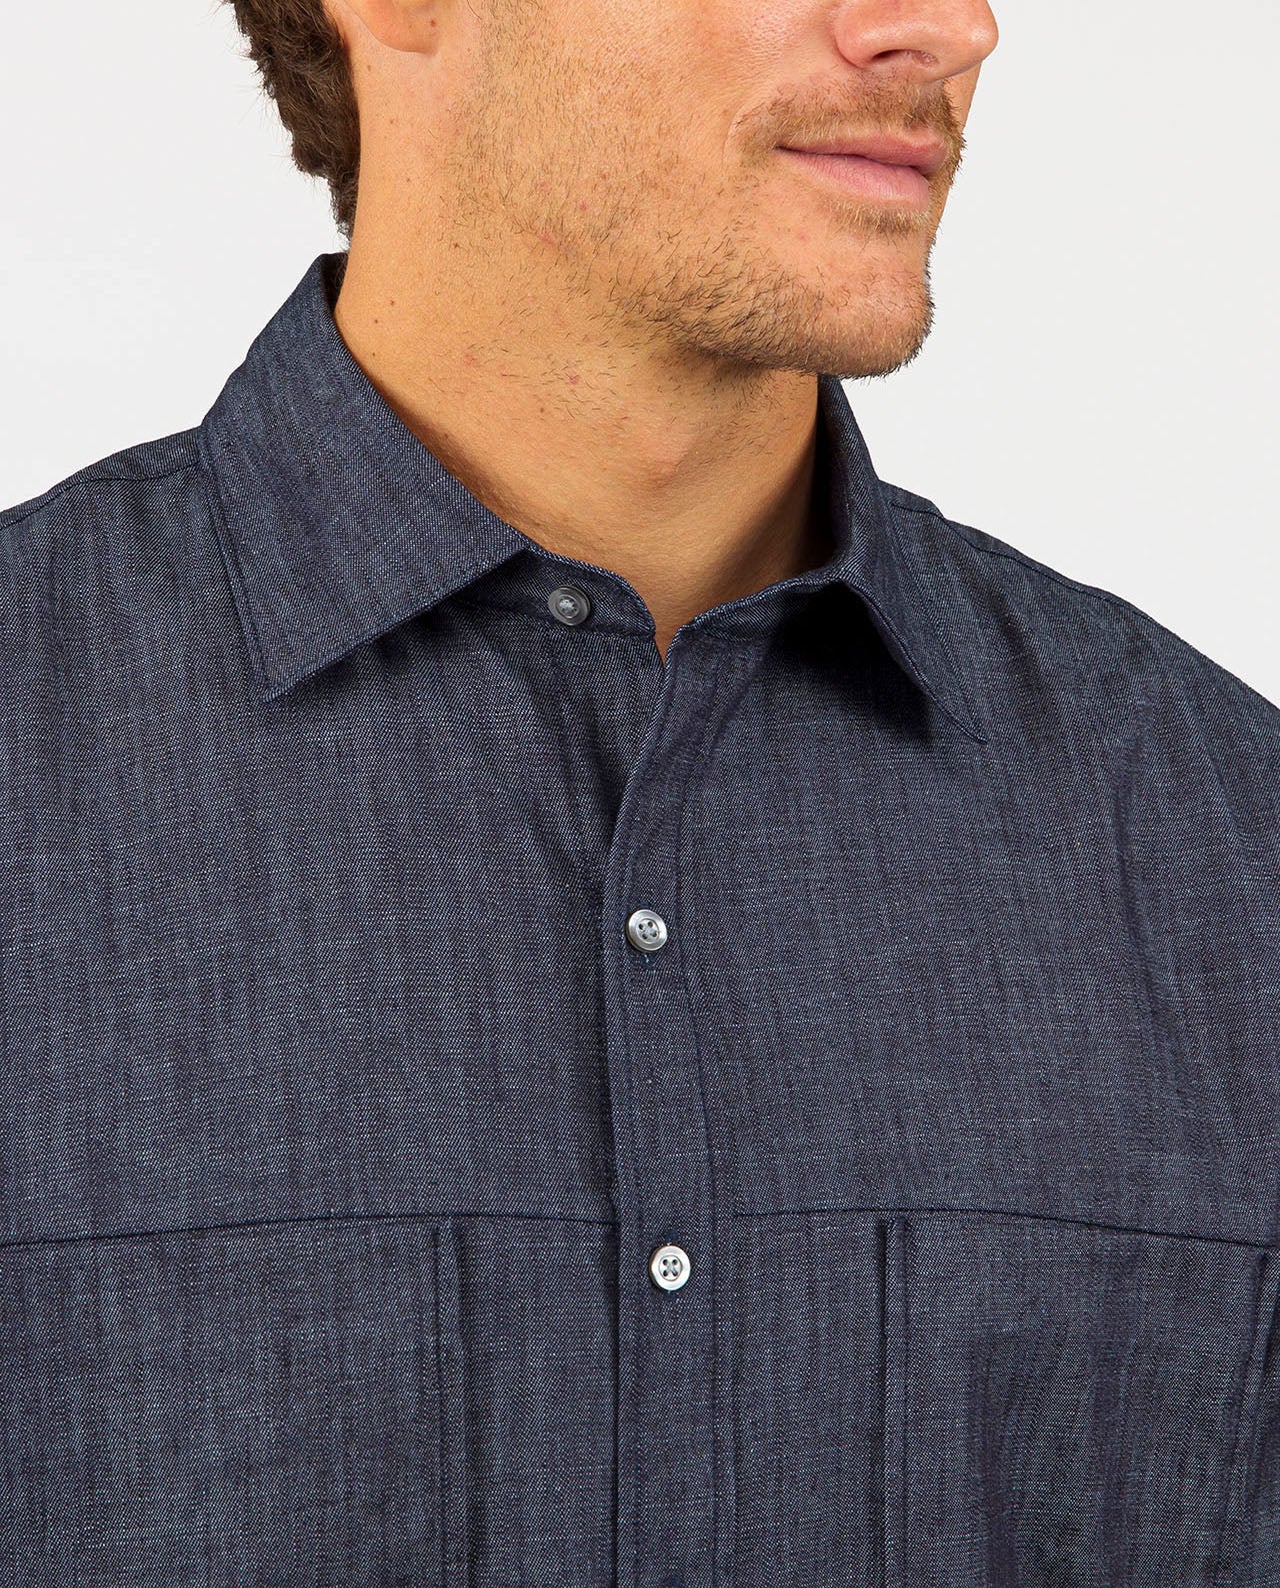 marché commun noyoco chemise homme chambray coton biologique fabriquée en Europe